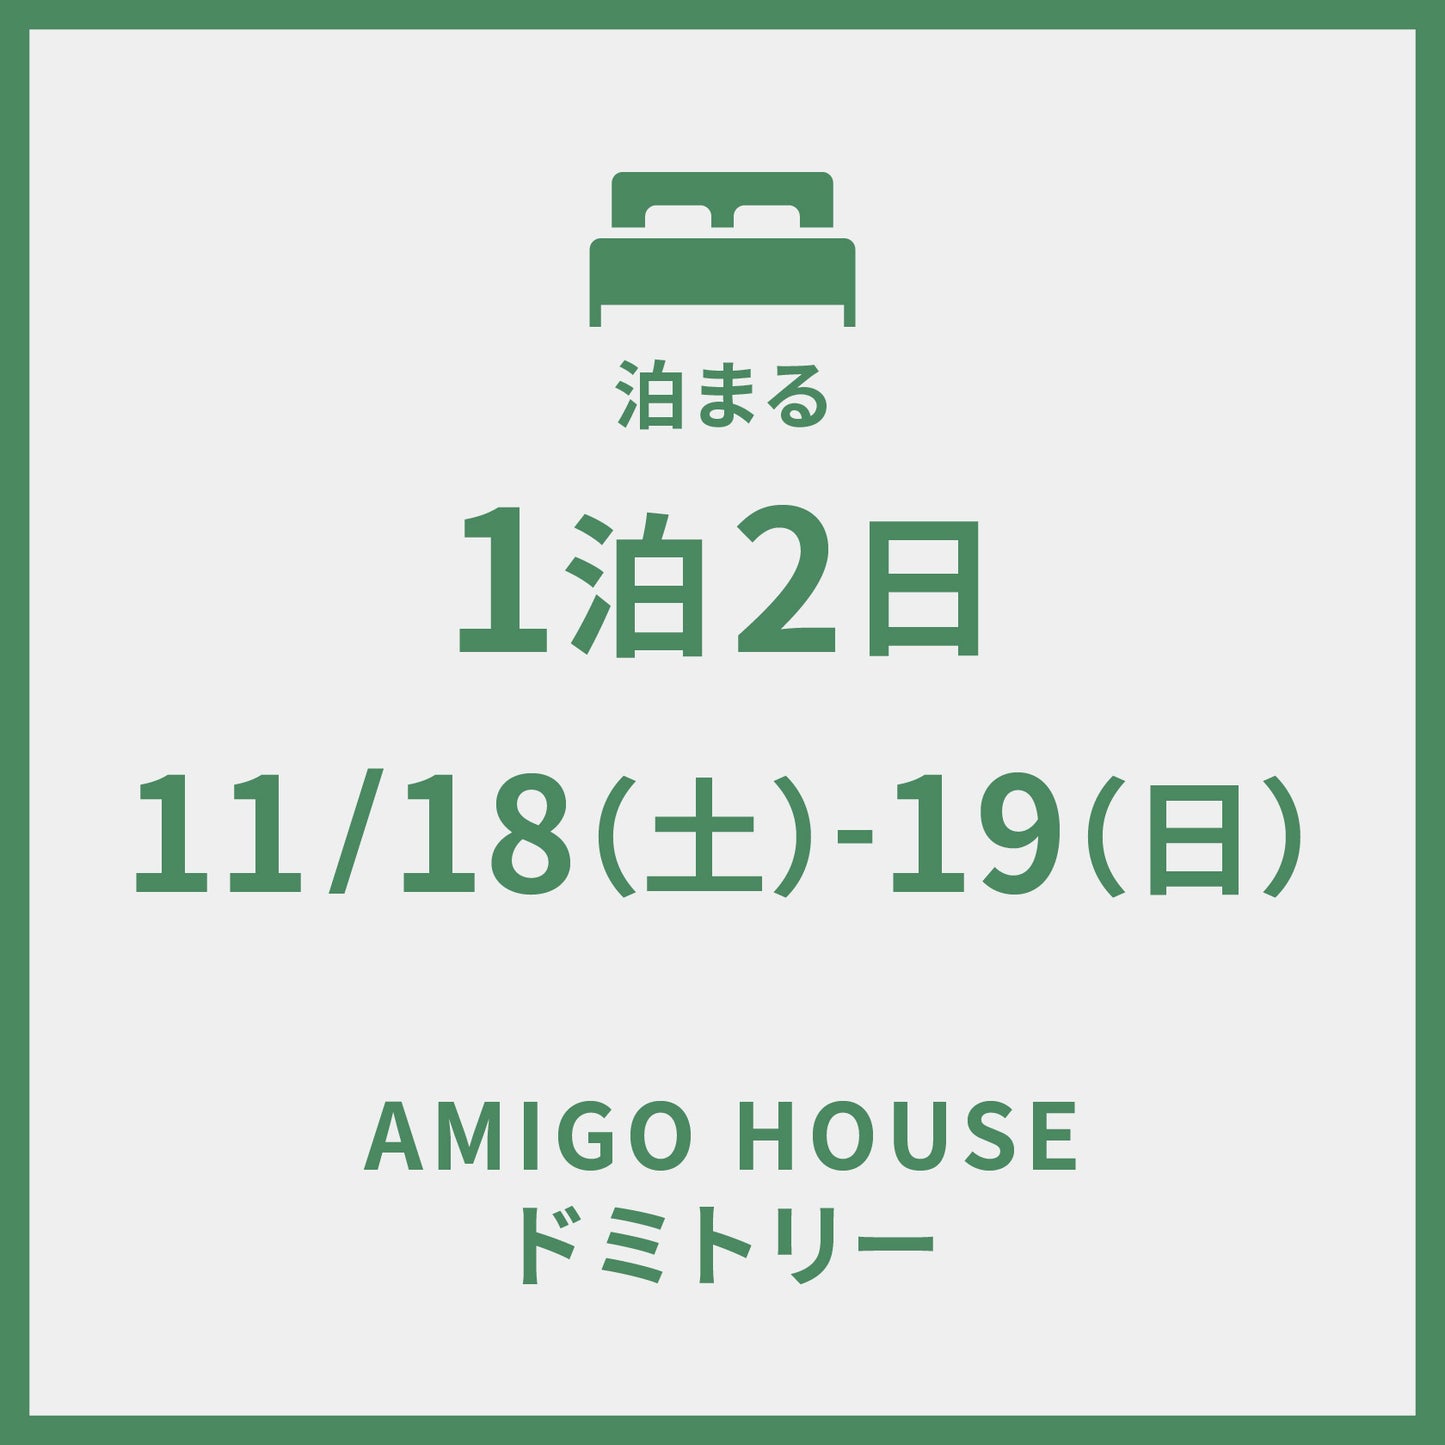 11/18-19 ＠AMIGO HOUSE　1泊2日プラン (ドミトリー)